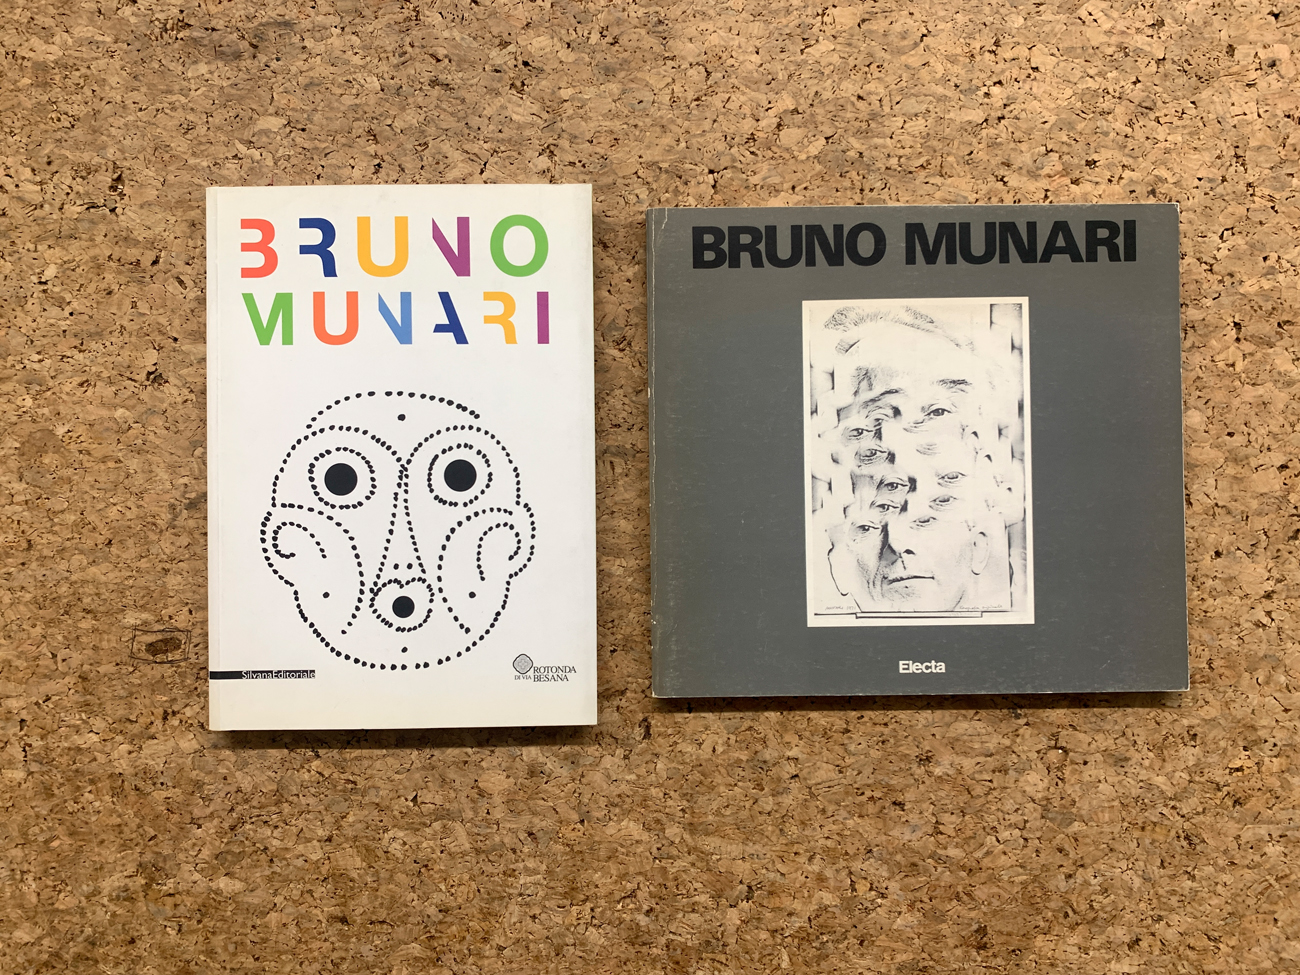 BRUNO MUNARI - Lotto unico di 2 cataloghi